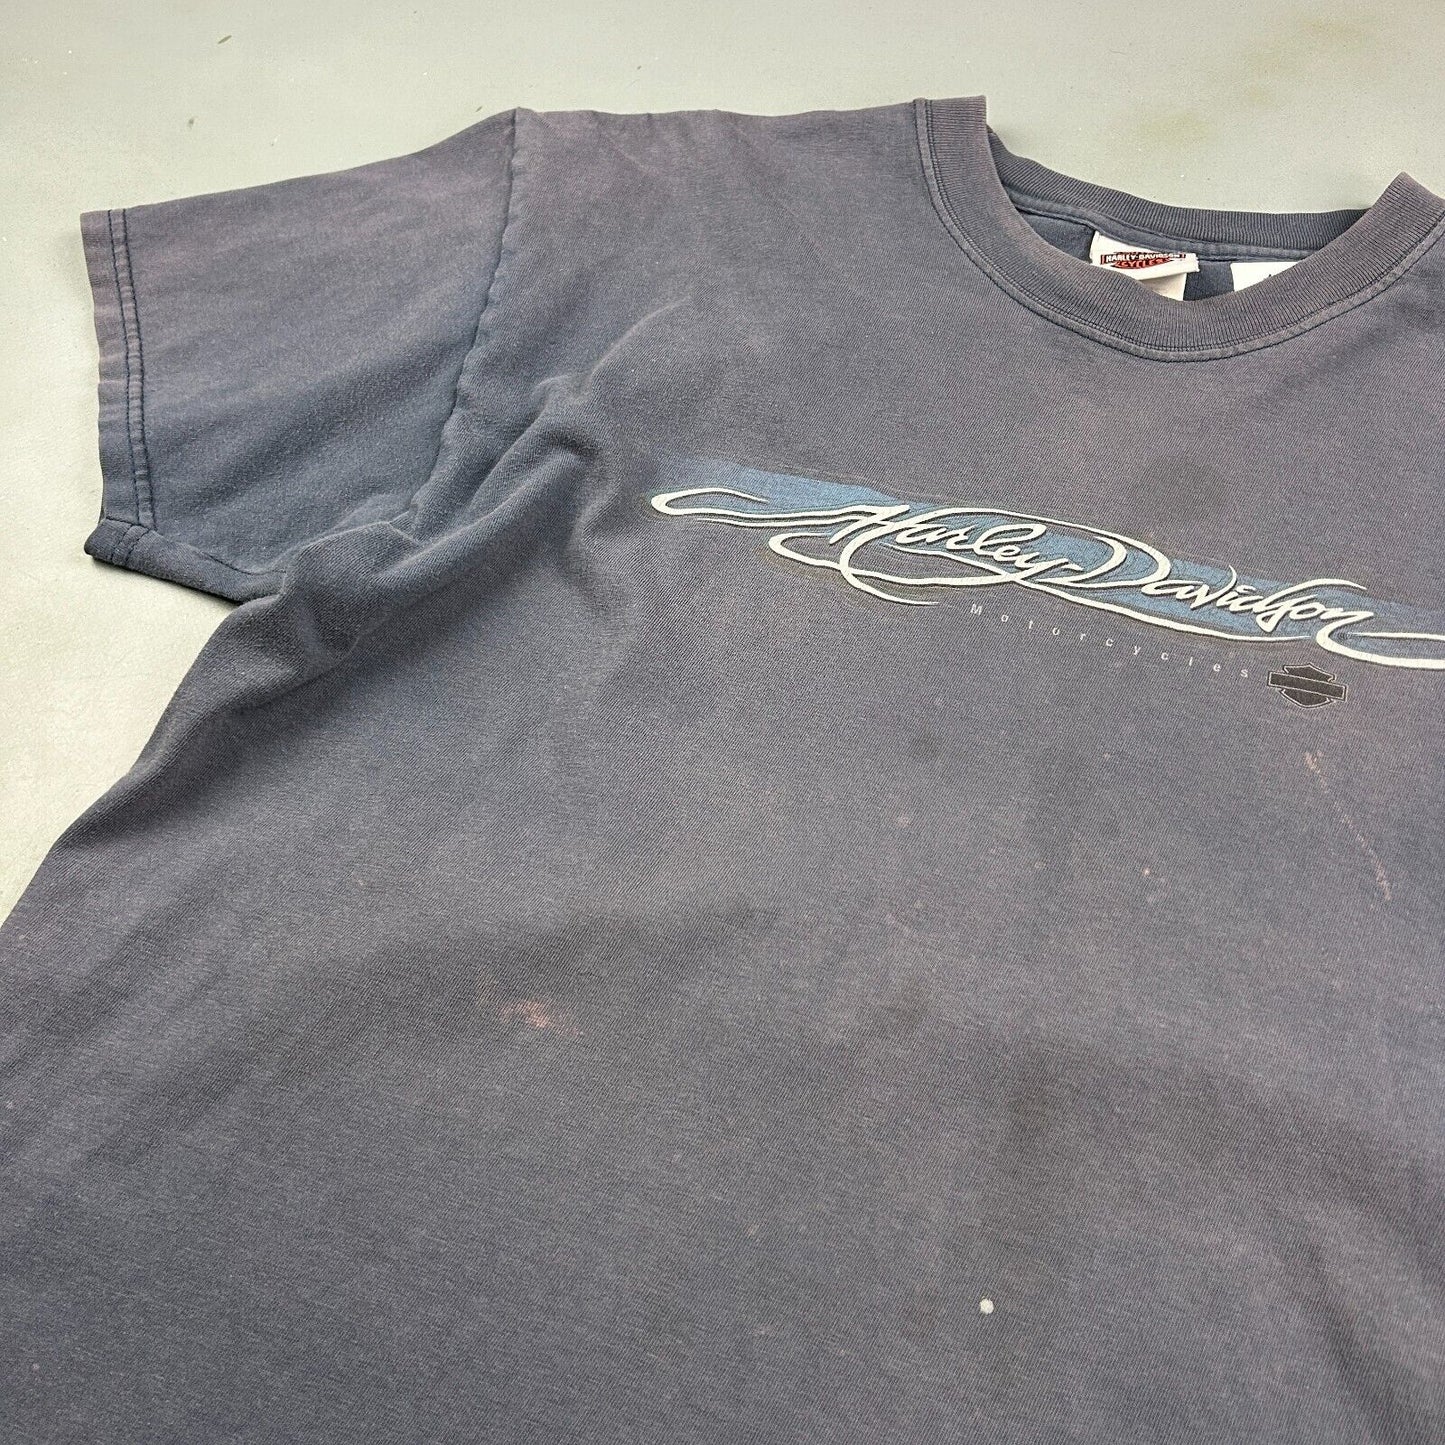 VINTAGE | Harley Davidson South East Faded Blue Biker T-Shirt sz L Adult